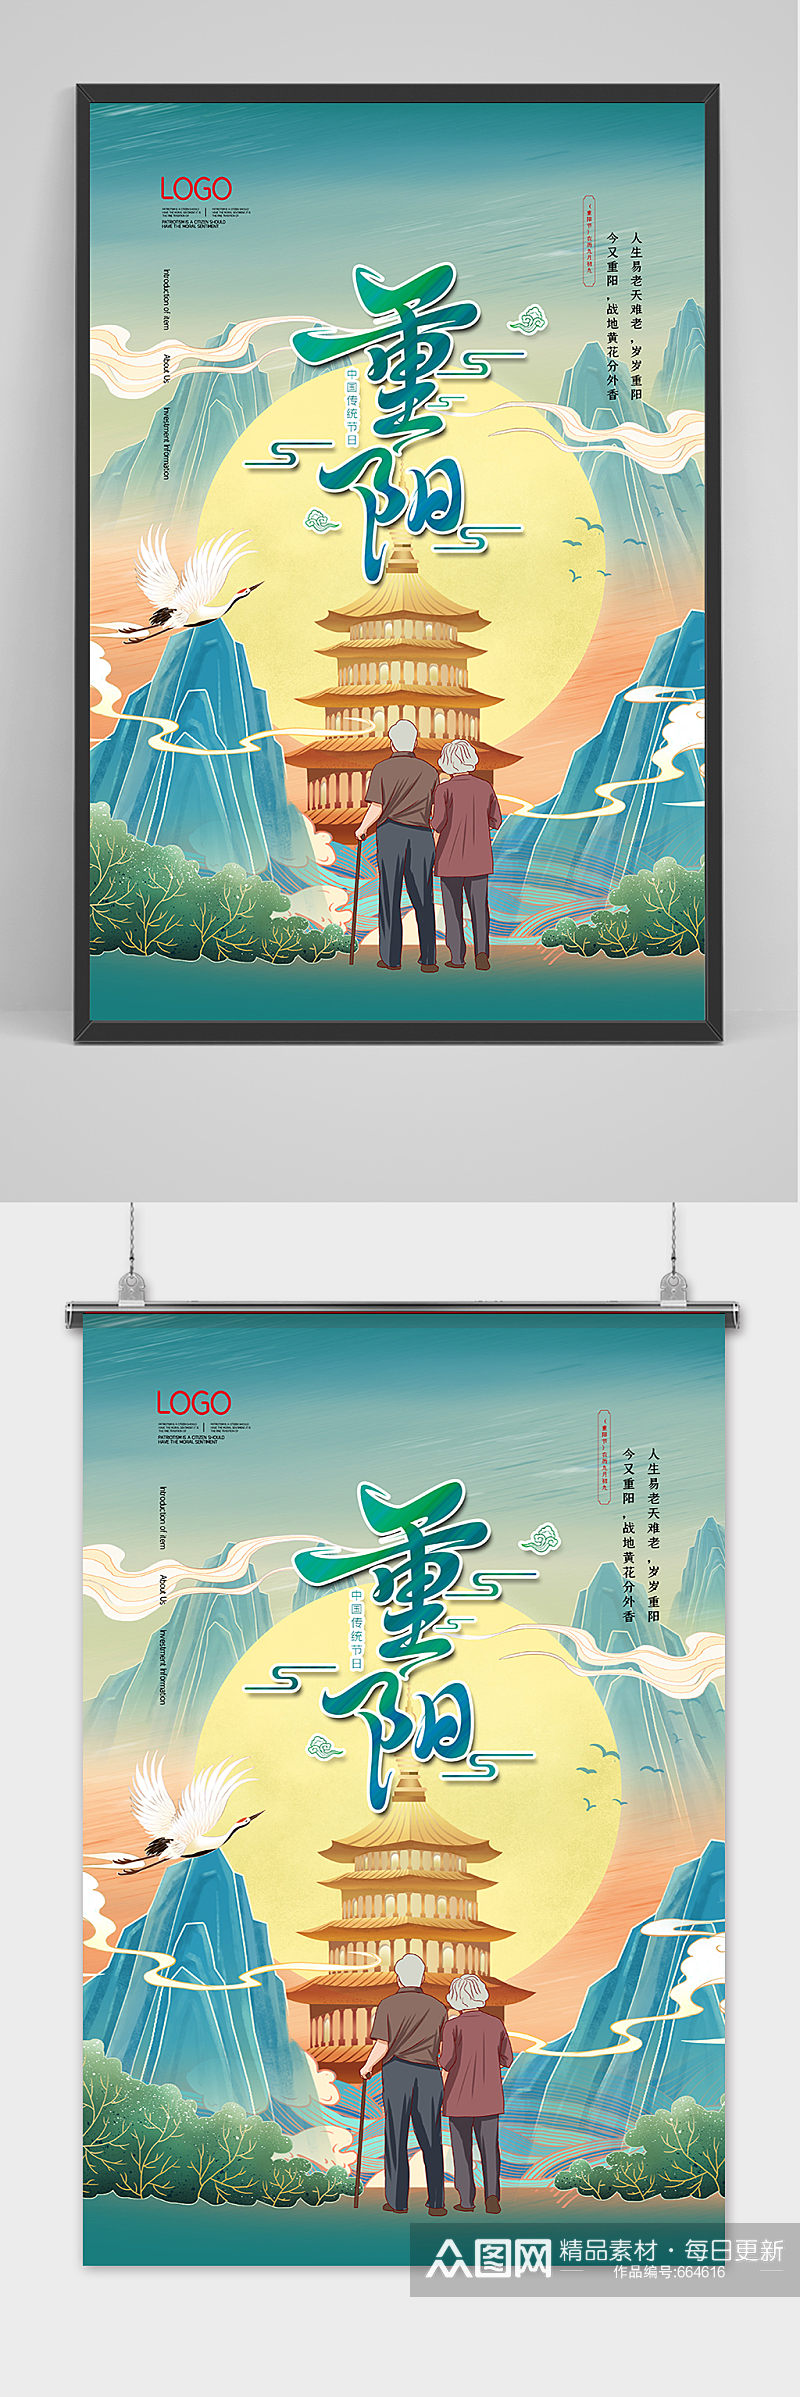 中国风创意传统节日重阳节海报素材